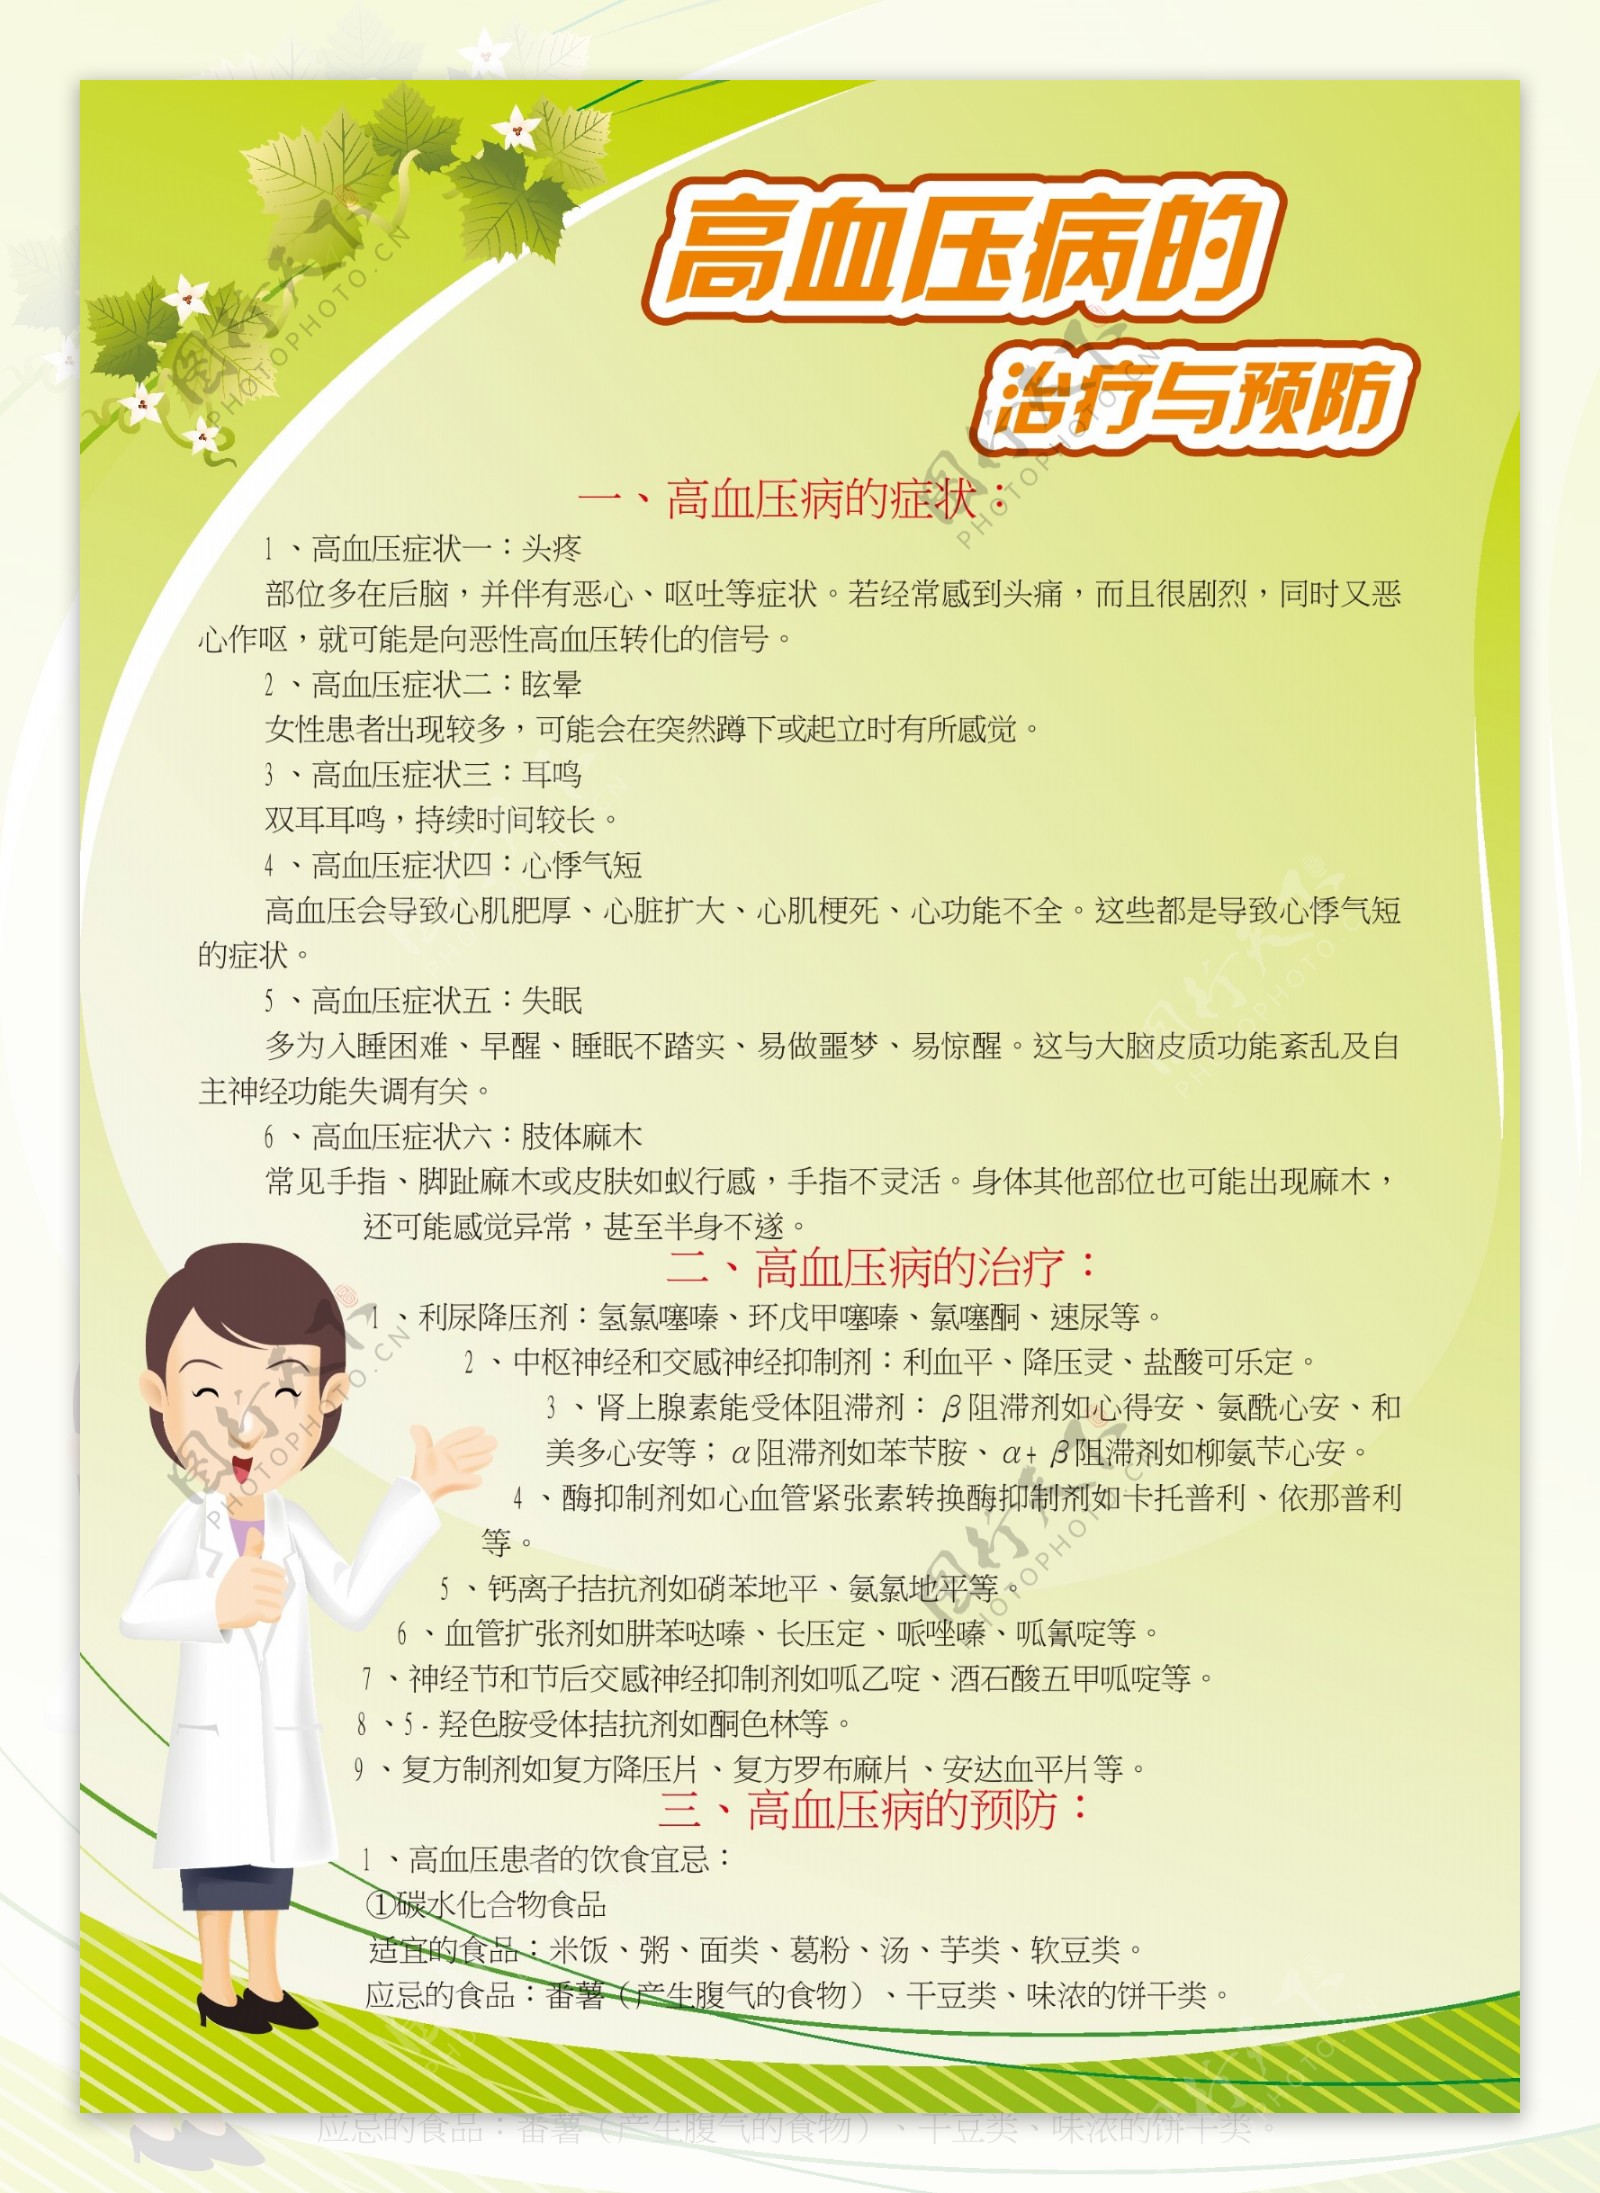 6幅漫画海报，提炼高血压防治的关键核心信息-搜狐大视野-搜狐新闻